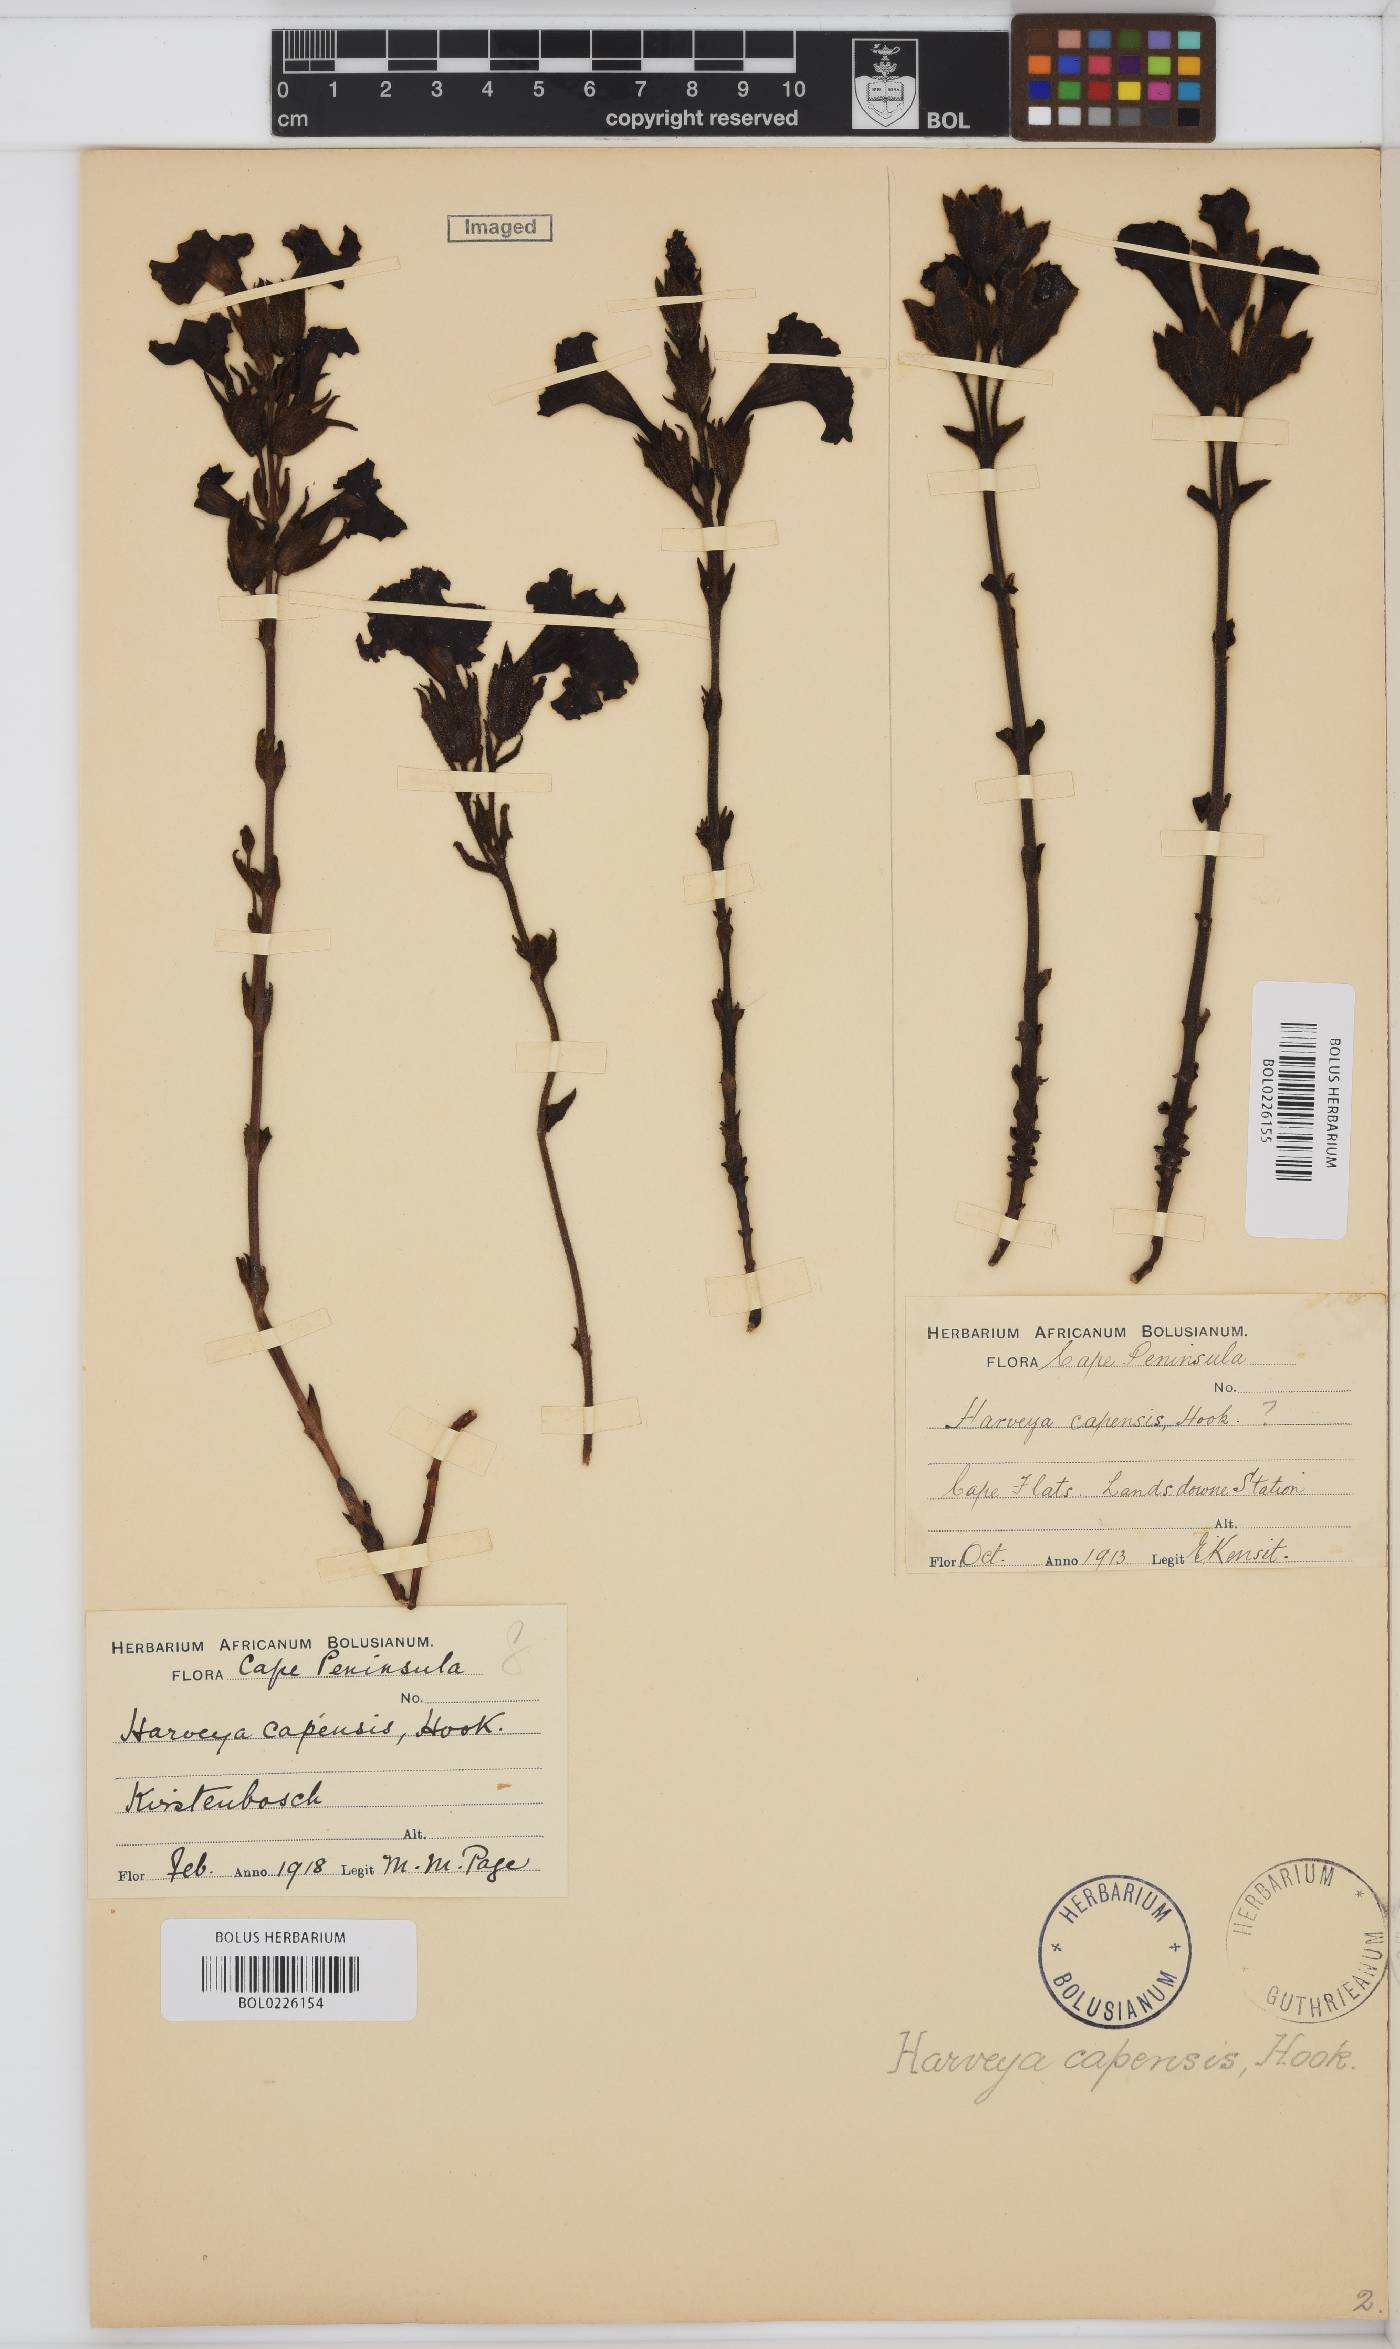 Harveya capensis image